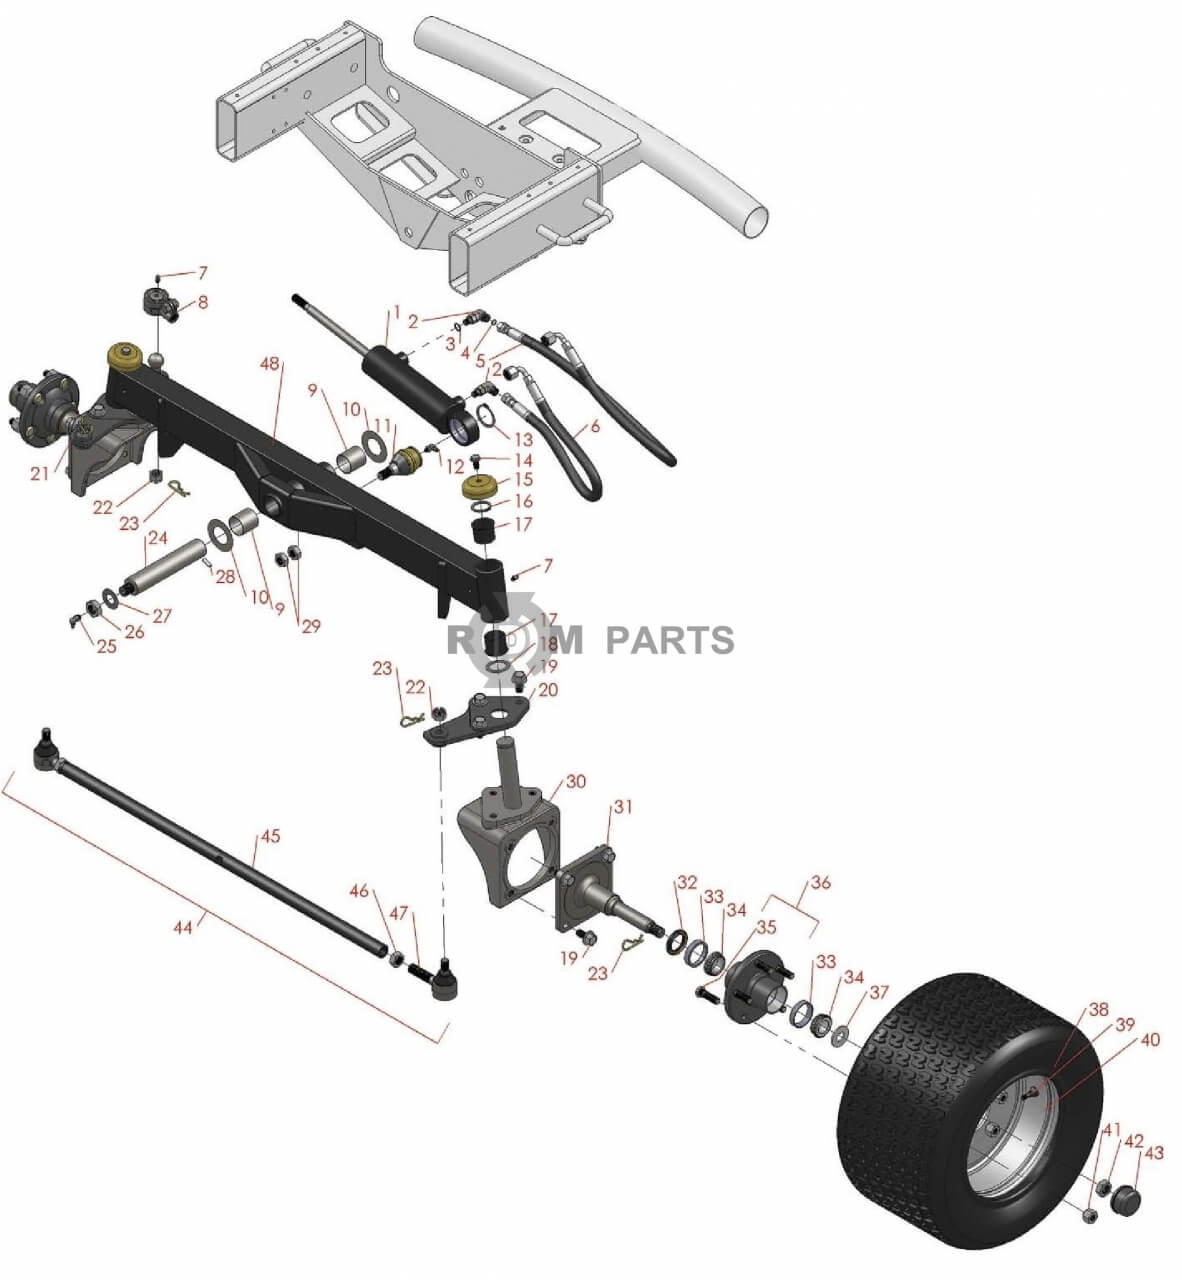 Replacement parts for RM 5210D 5410D 5510D 5610D Rear axle